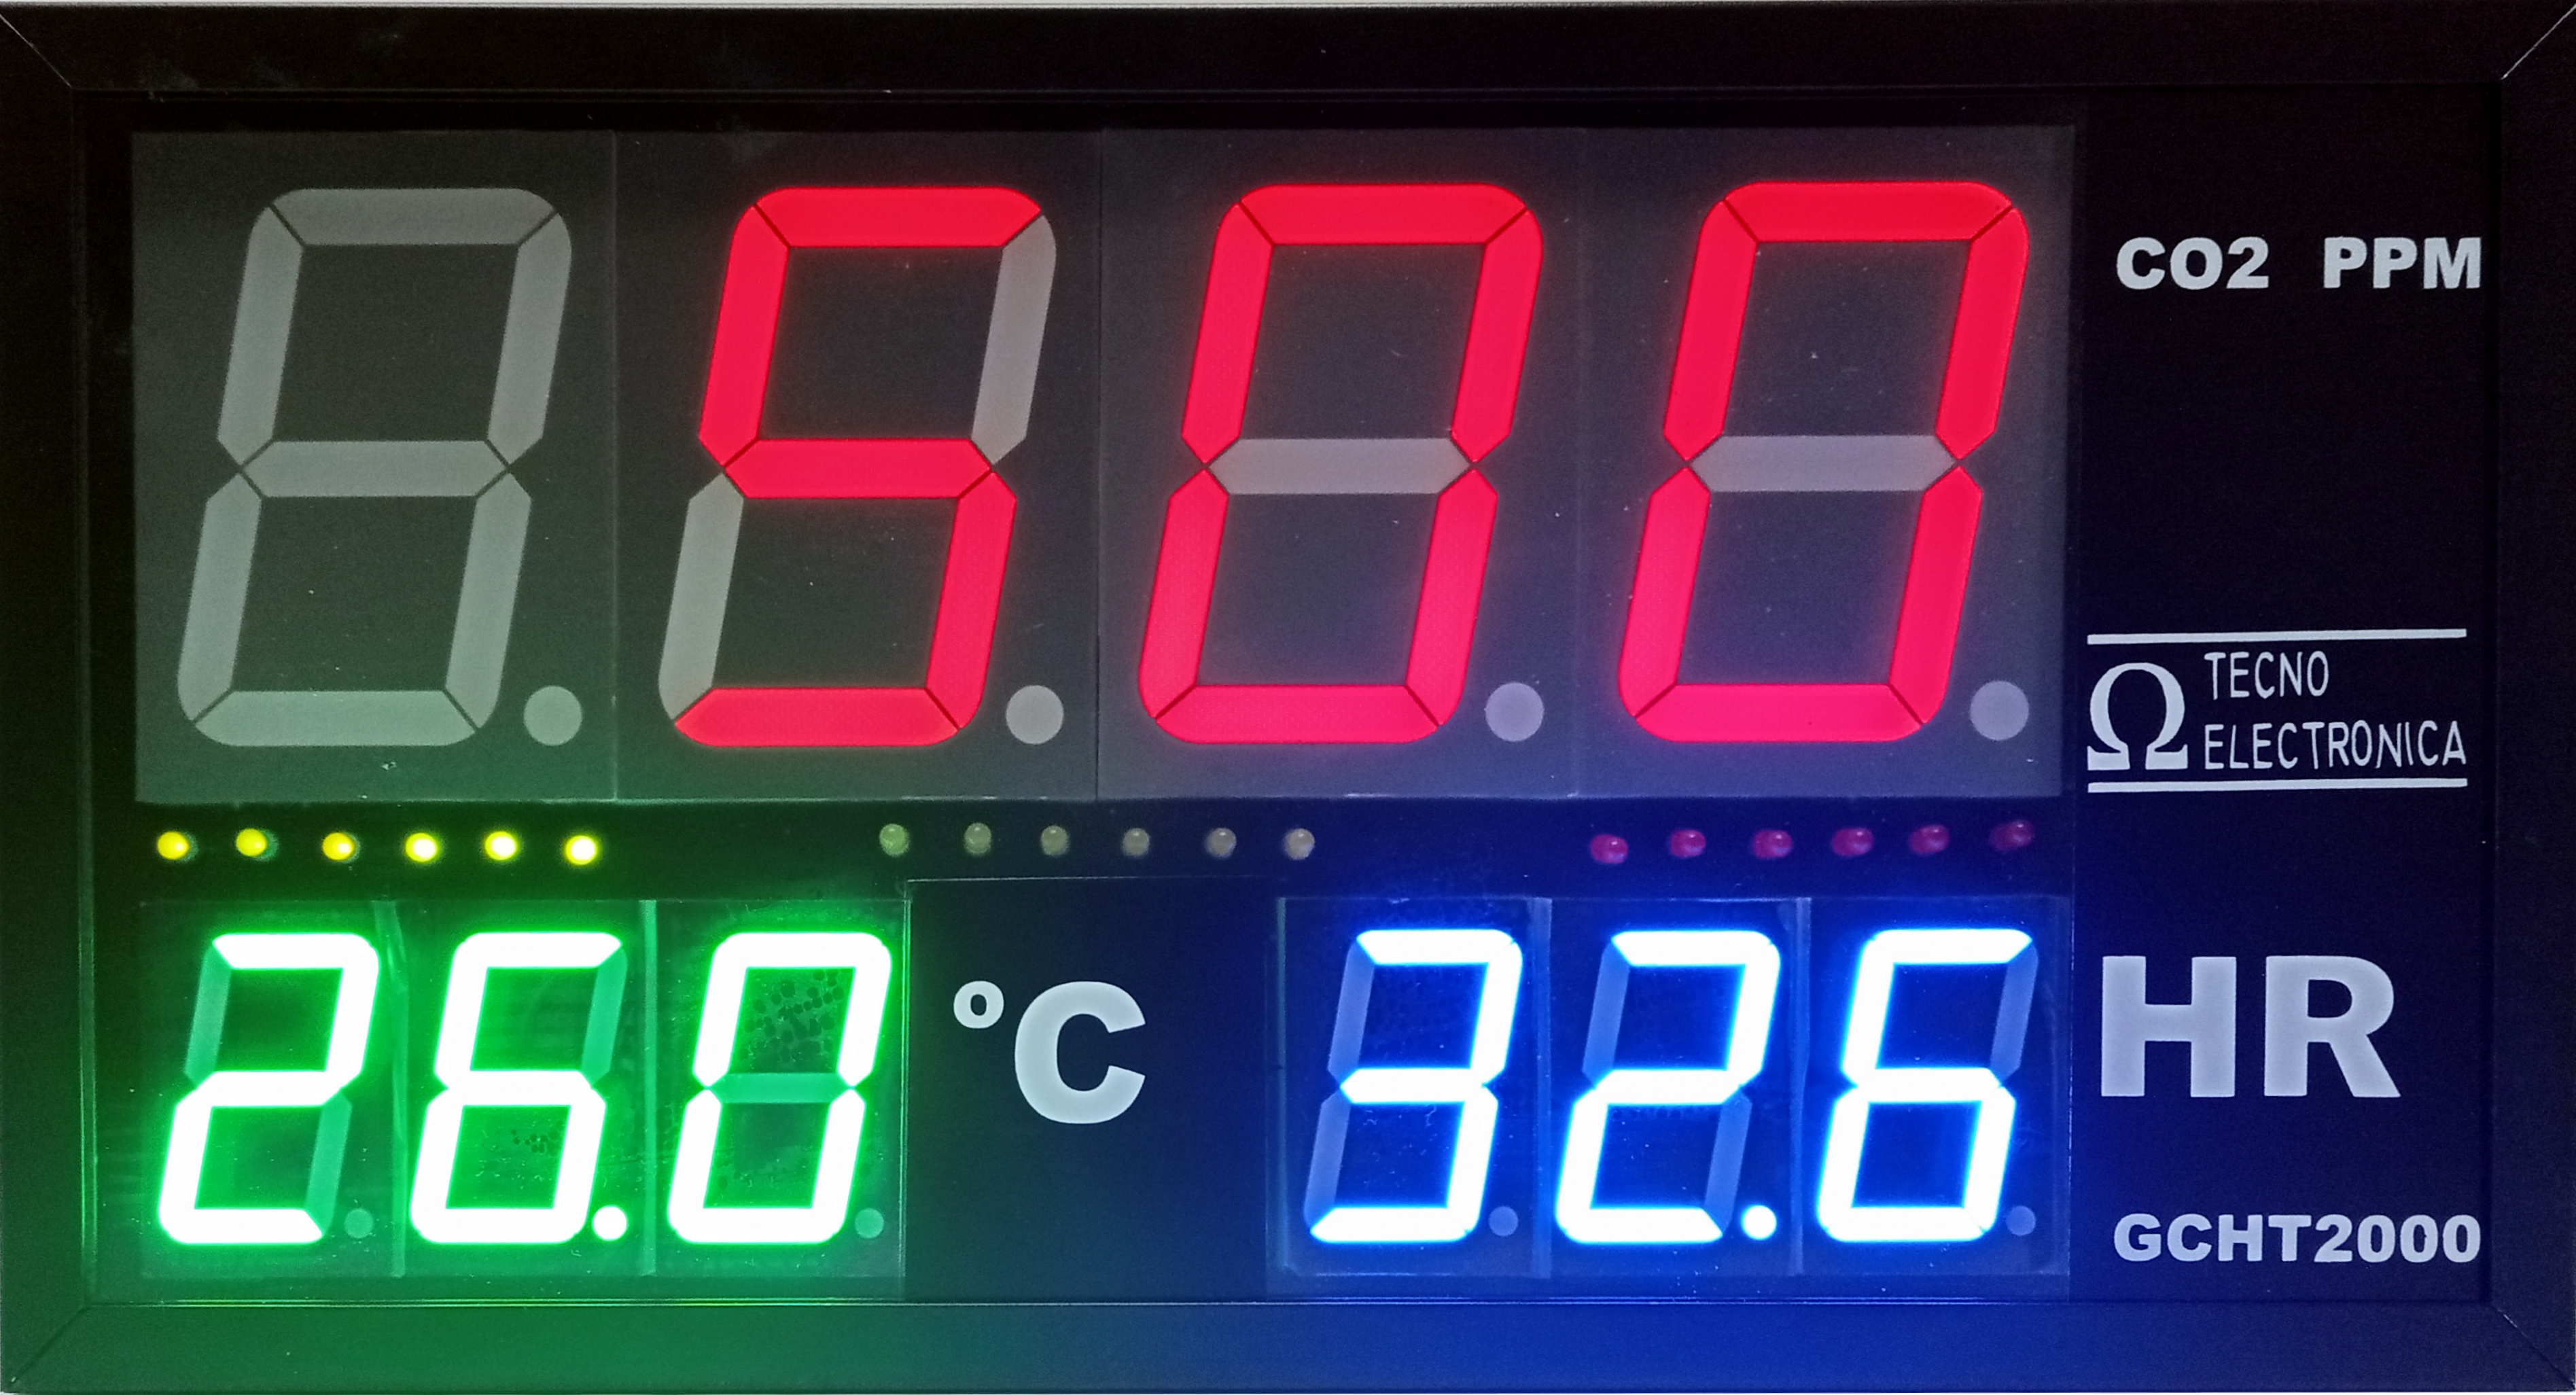 Indicador de la calidad del aire. Sensor de CO2, Temperatura y Humedad